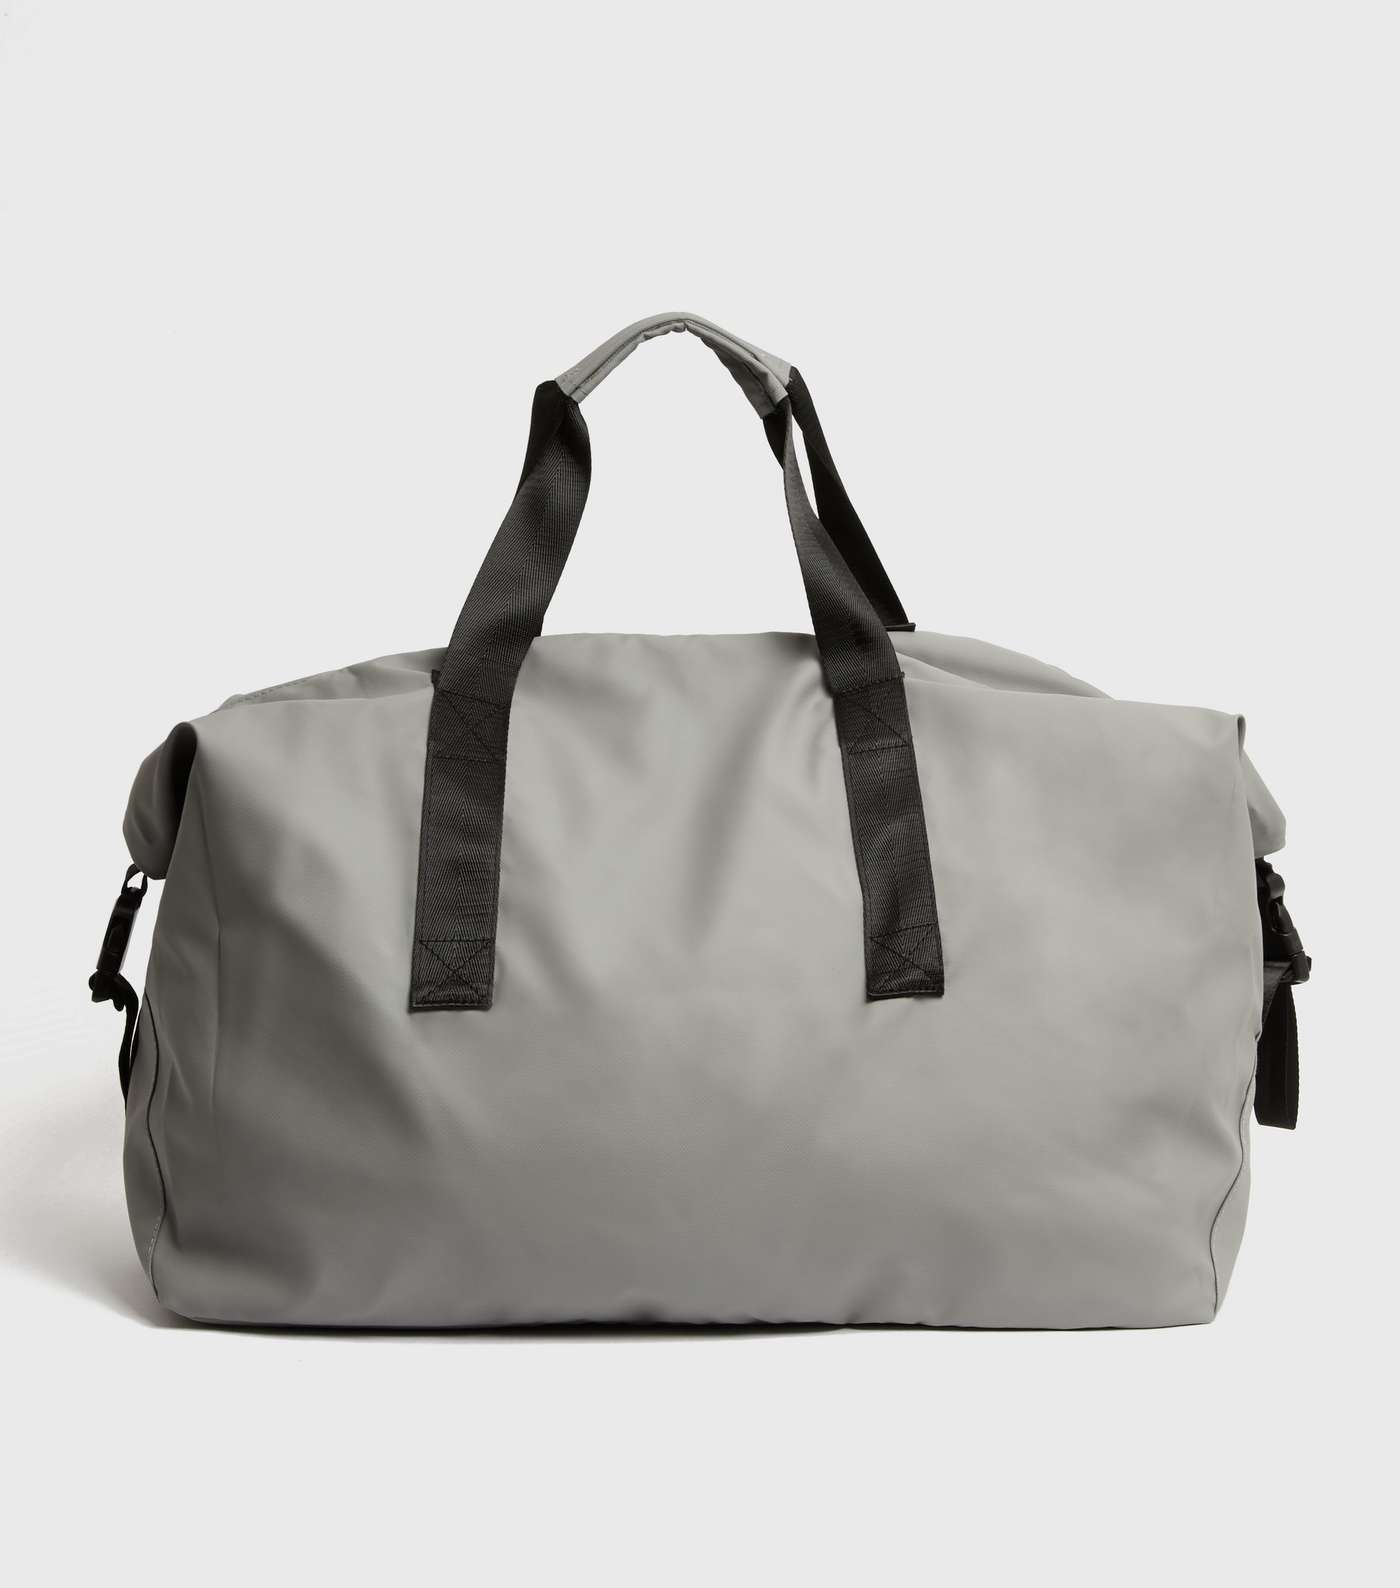 Jack & Jones Grey Duffle Bag Image 4